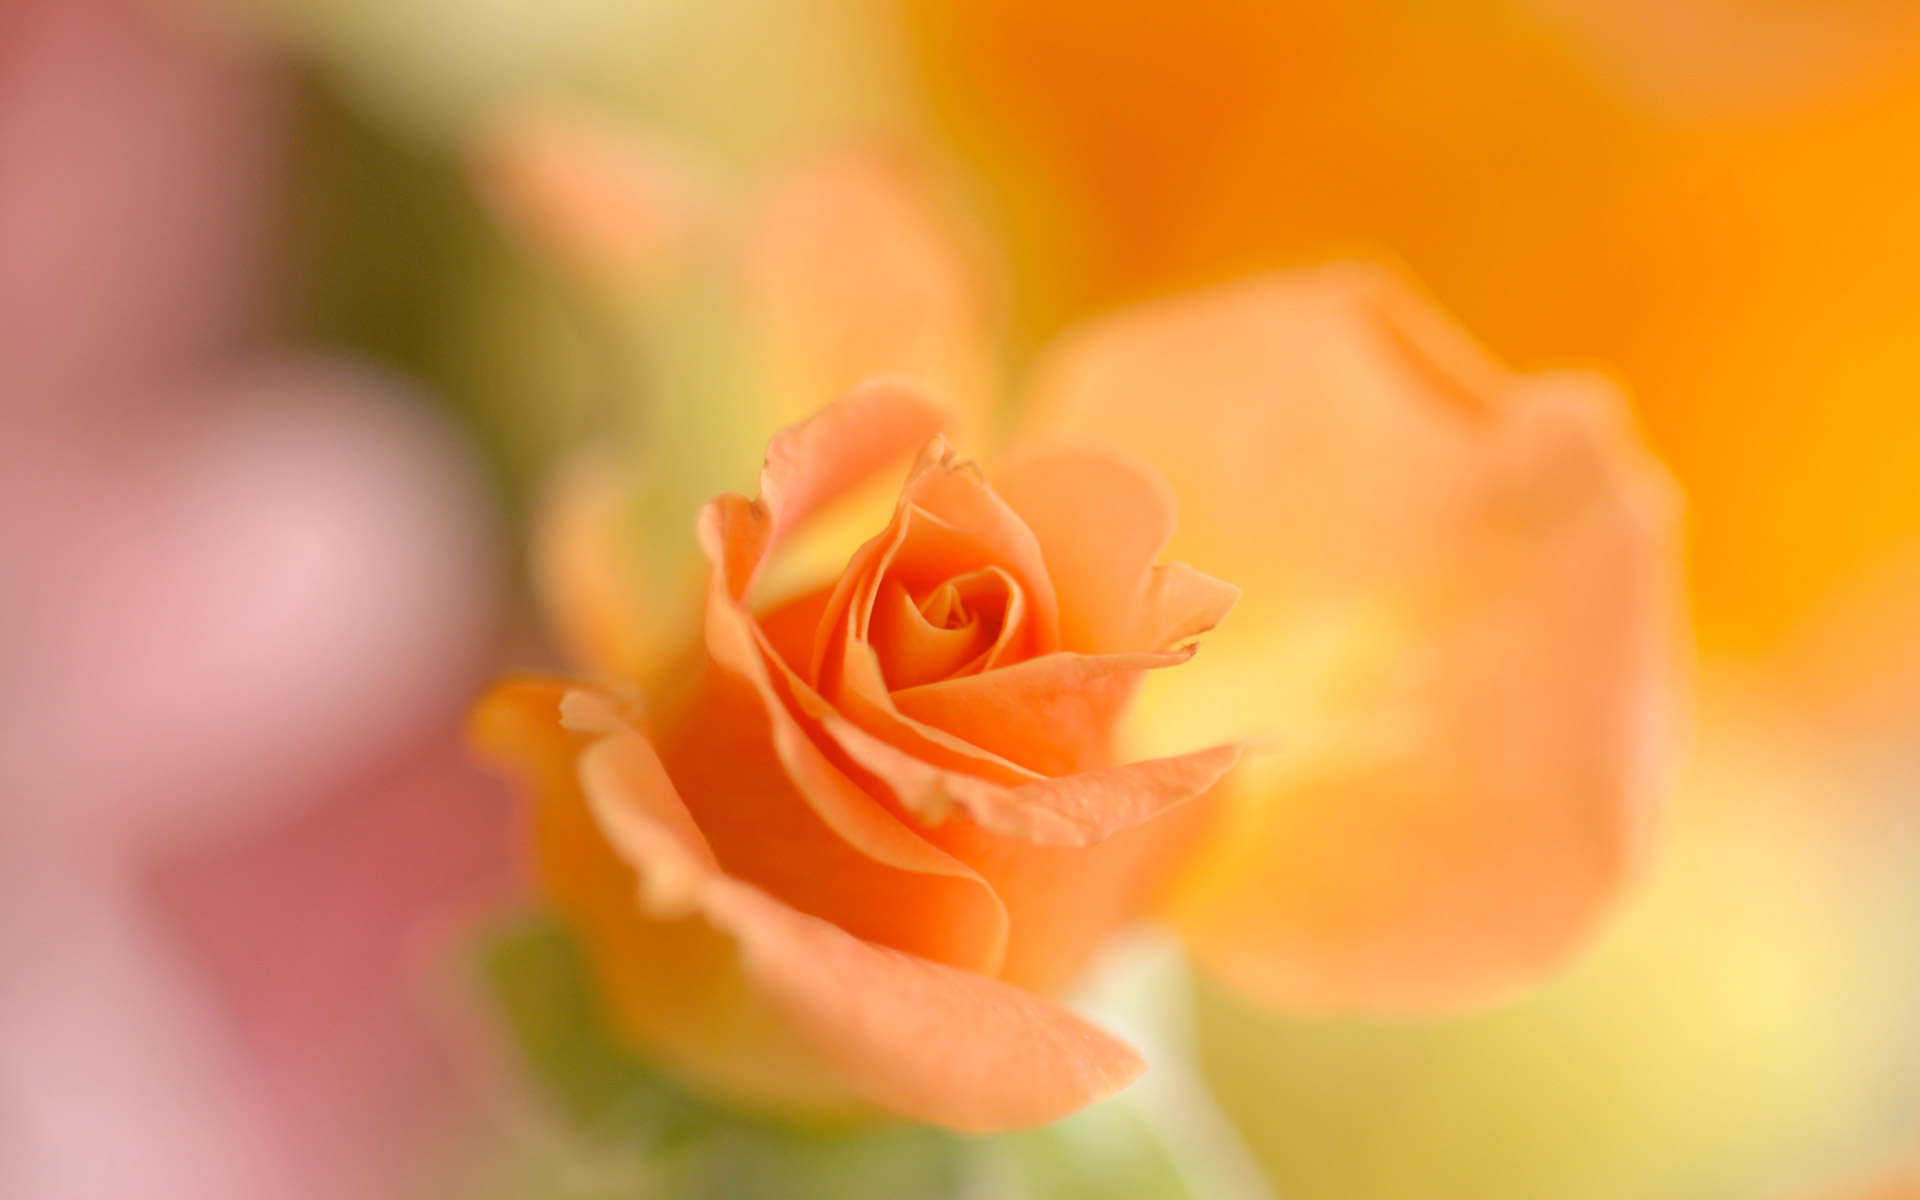 Papel De Parede Grátis De Flores - Hd Bouquet Orange Rose Wallpaper For Redmi Note 3 - HD Wallpaper 